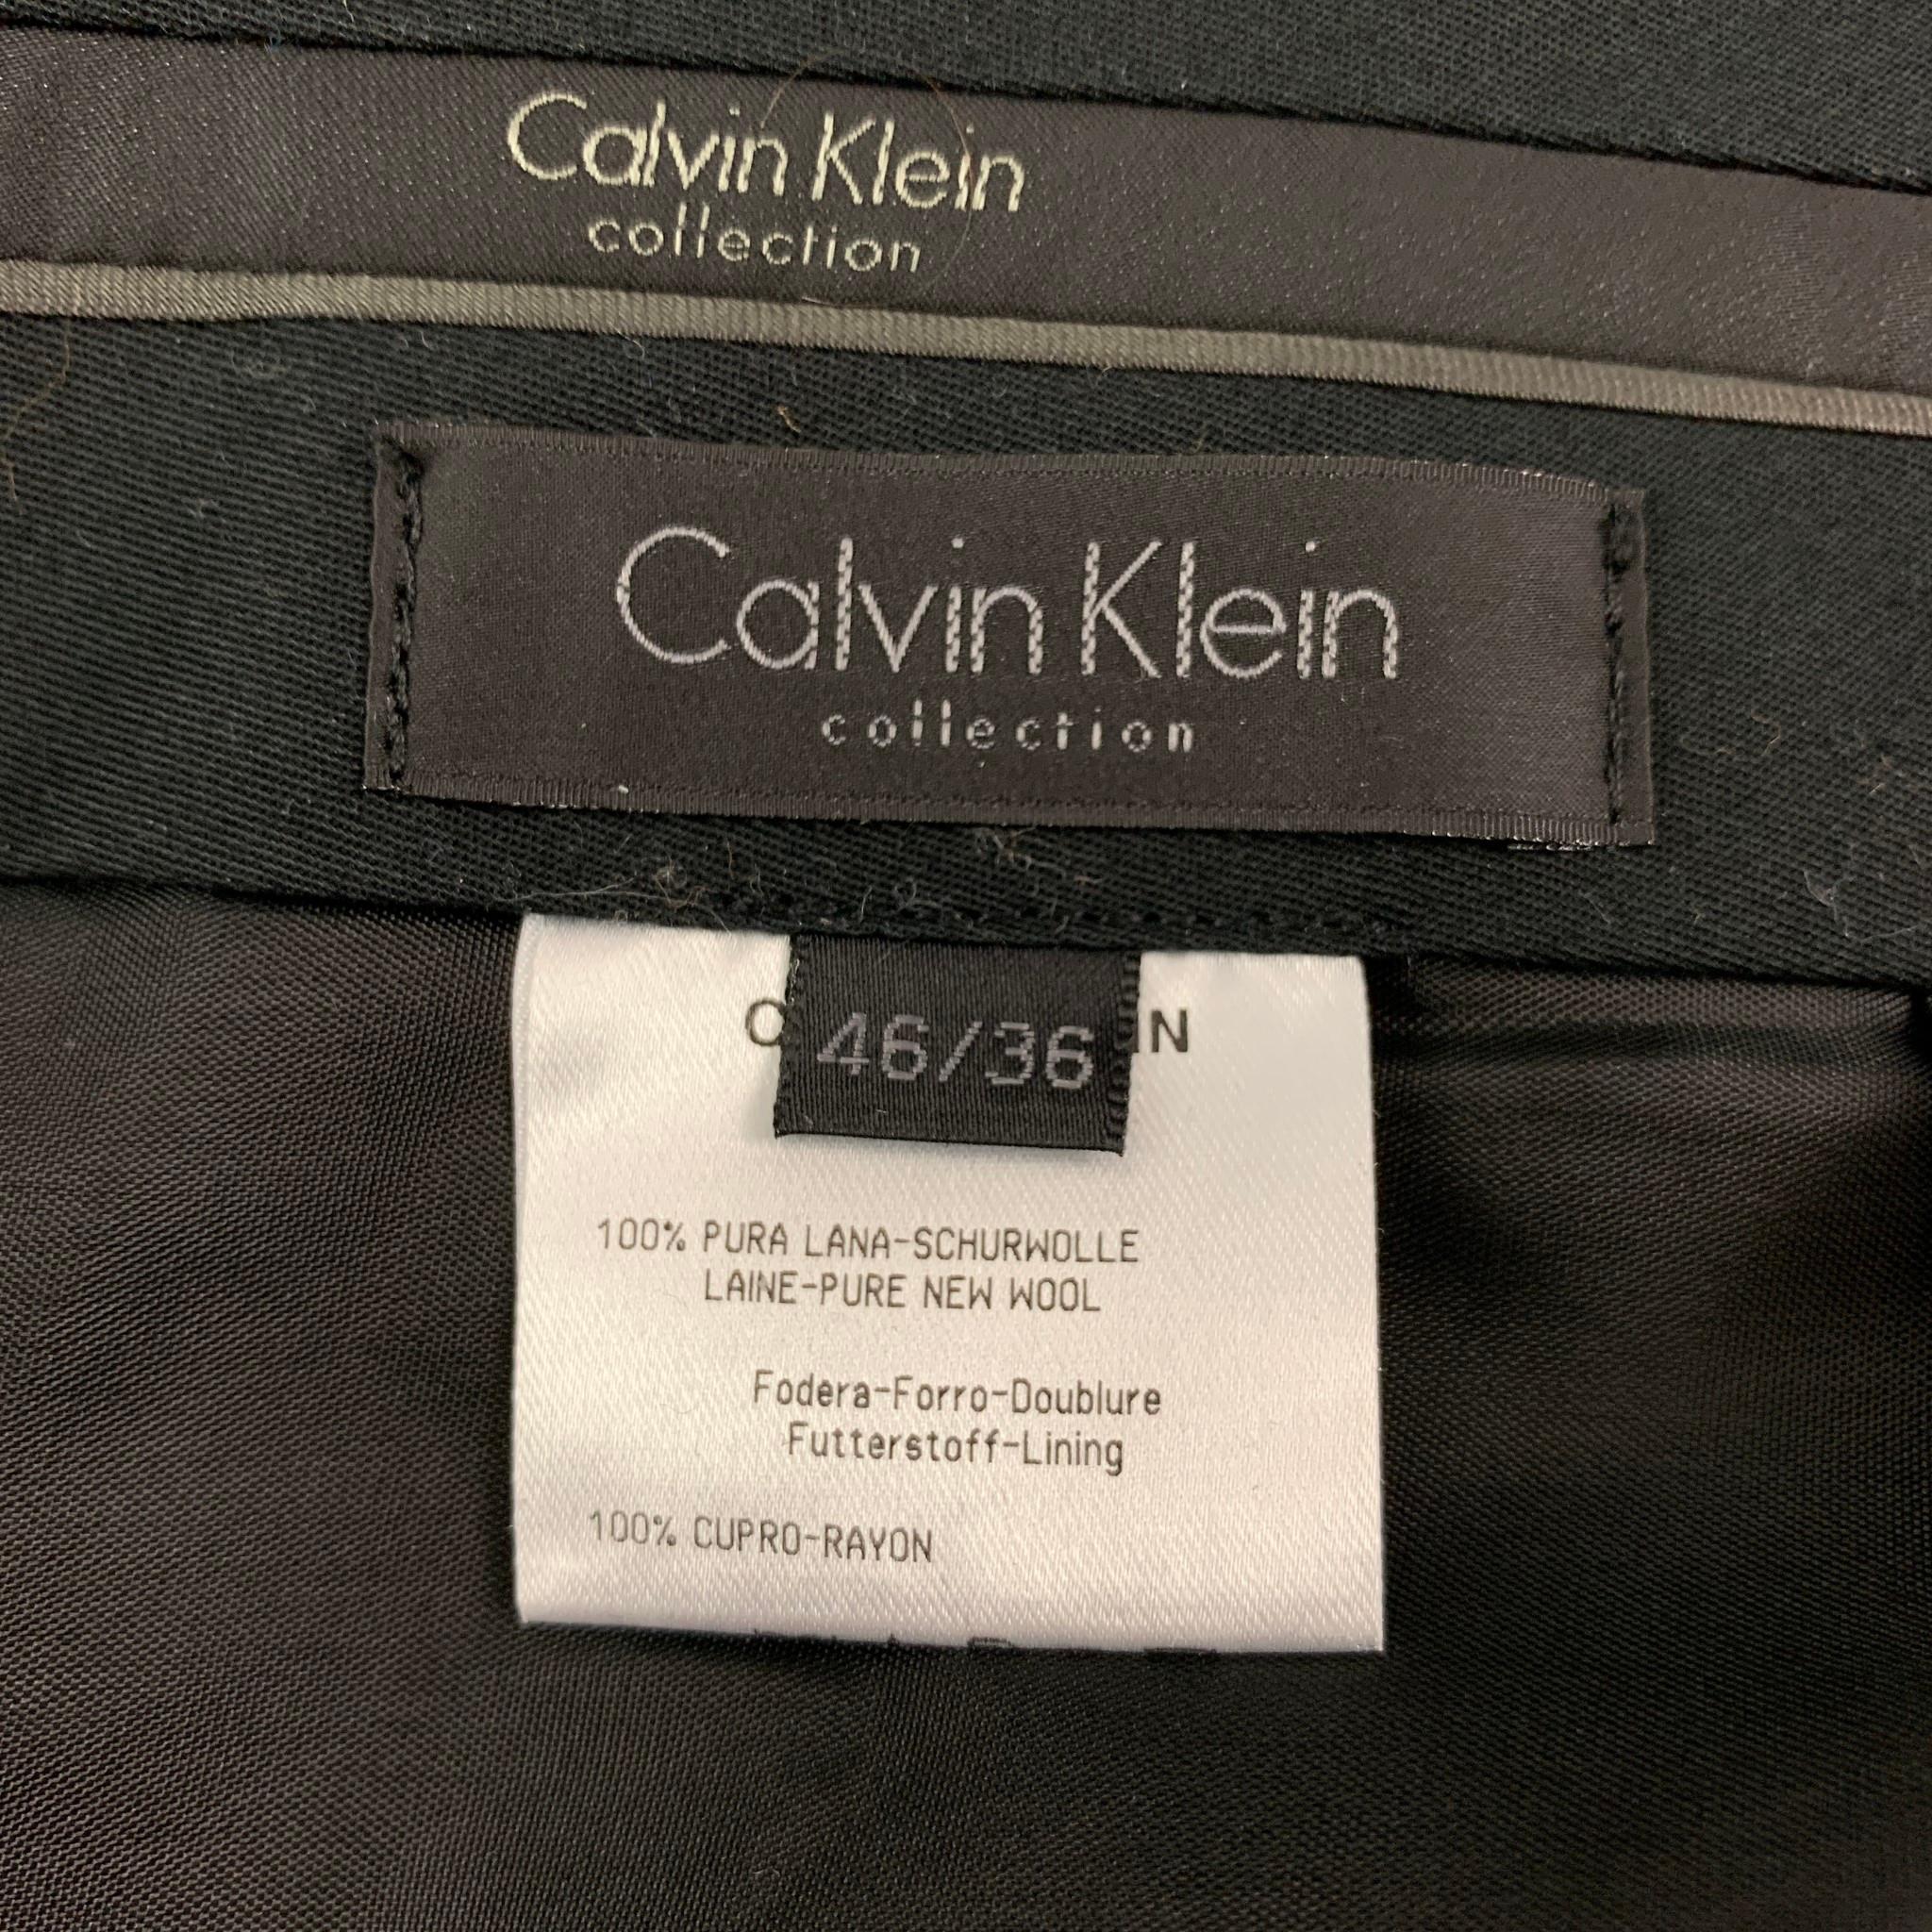 CALVIN KLEIN COLLECTION Size 36 Black Wool Notch Lapel Tuxedo Suit 3